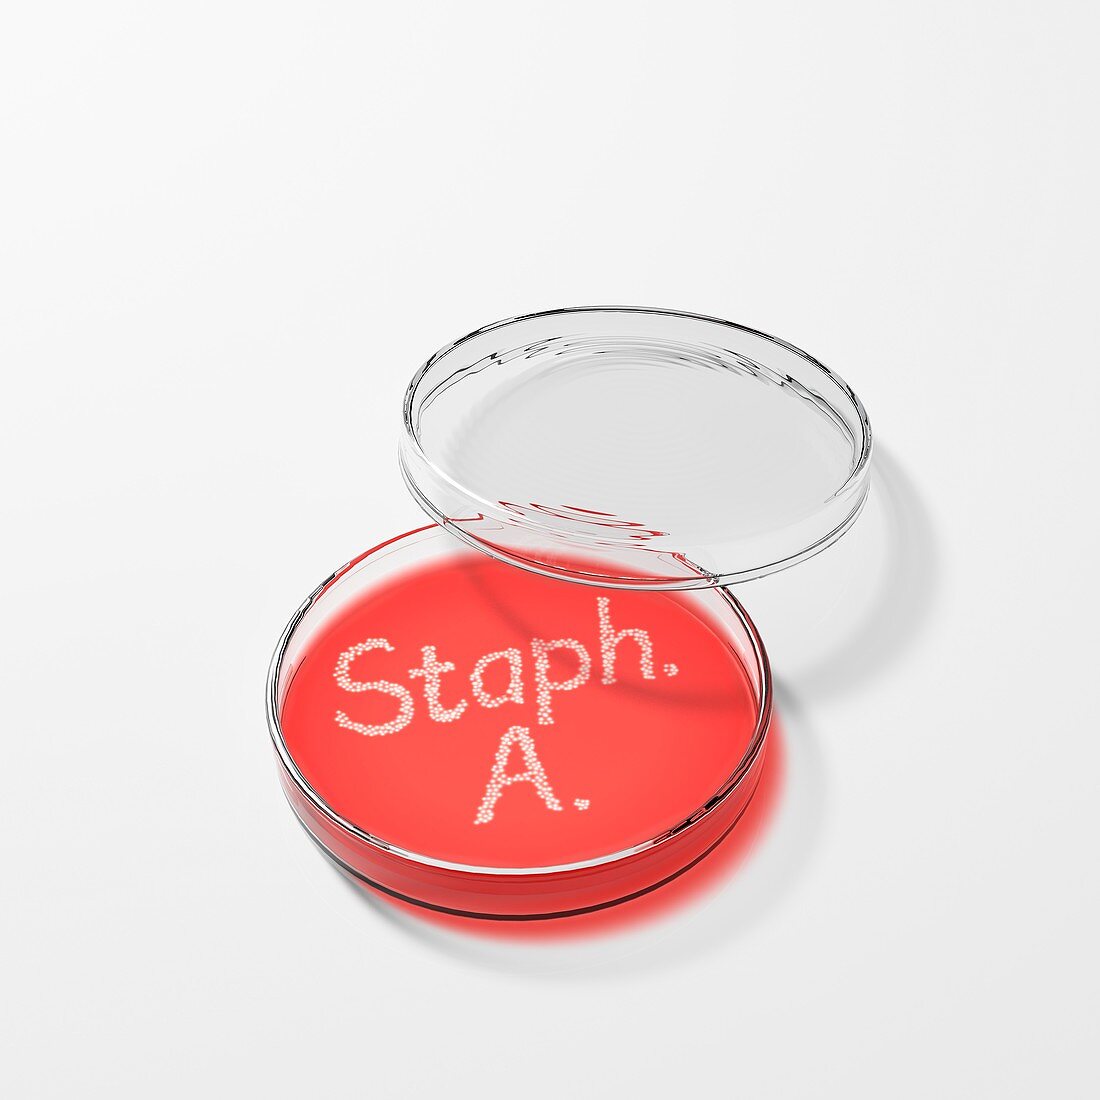 Staphylococcus aureus in a petri dish